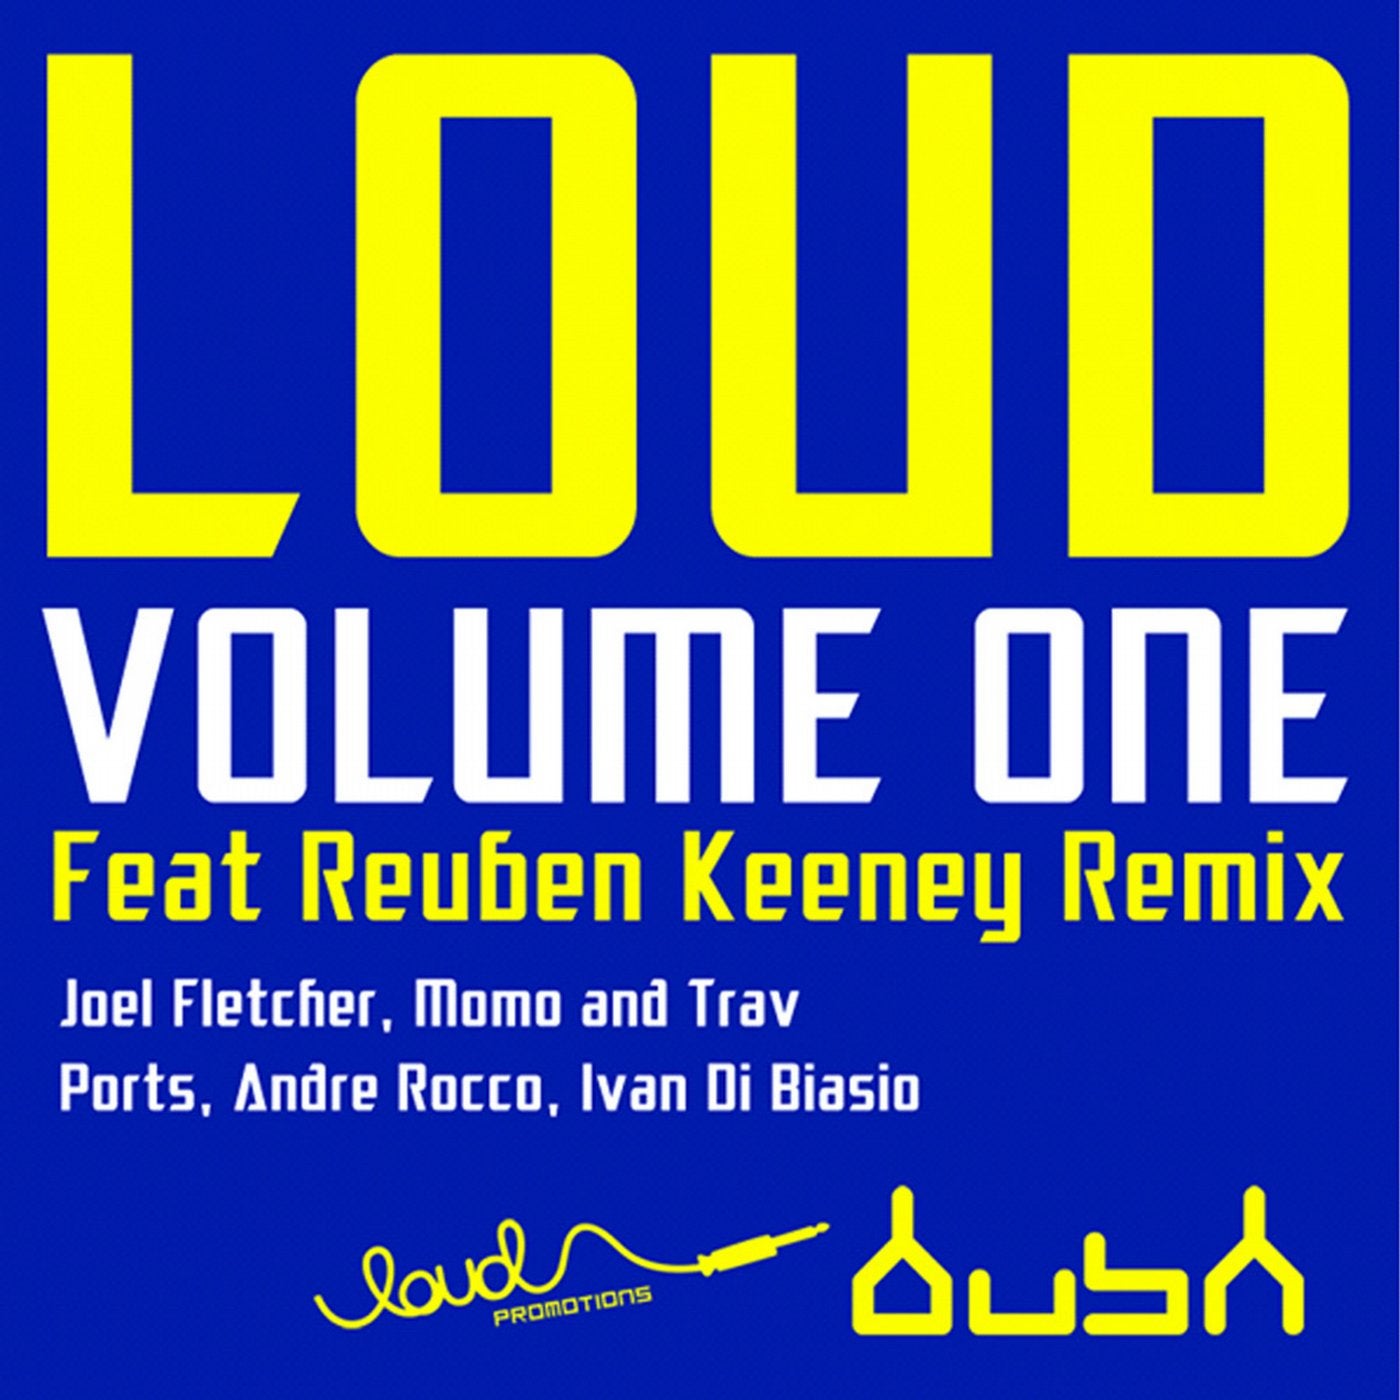 Loud, Vol.1 - EP